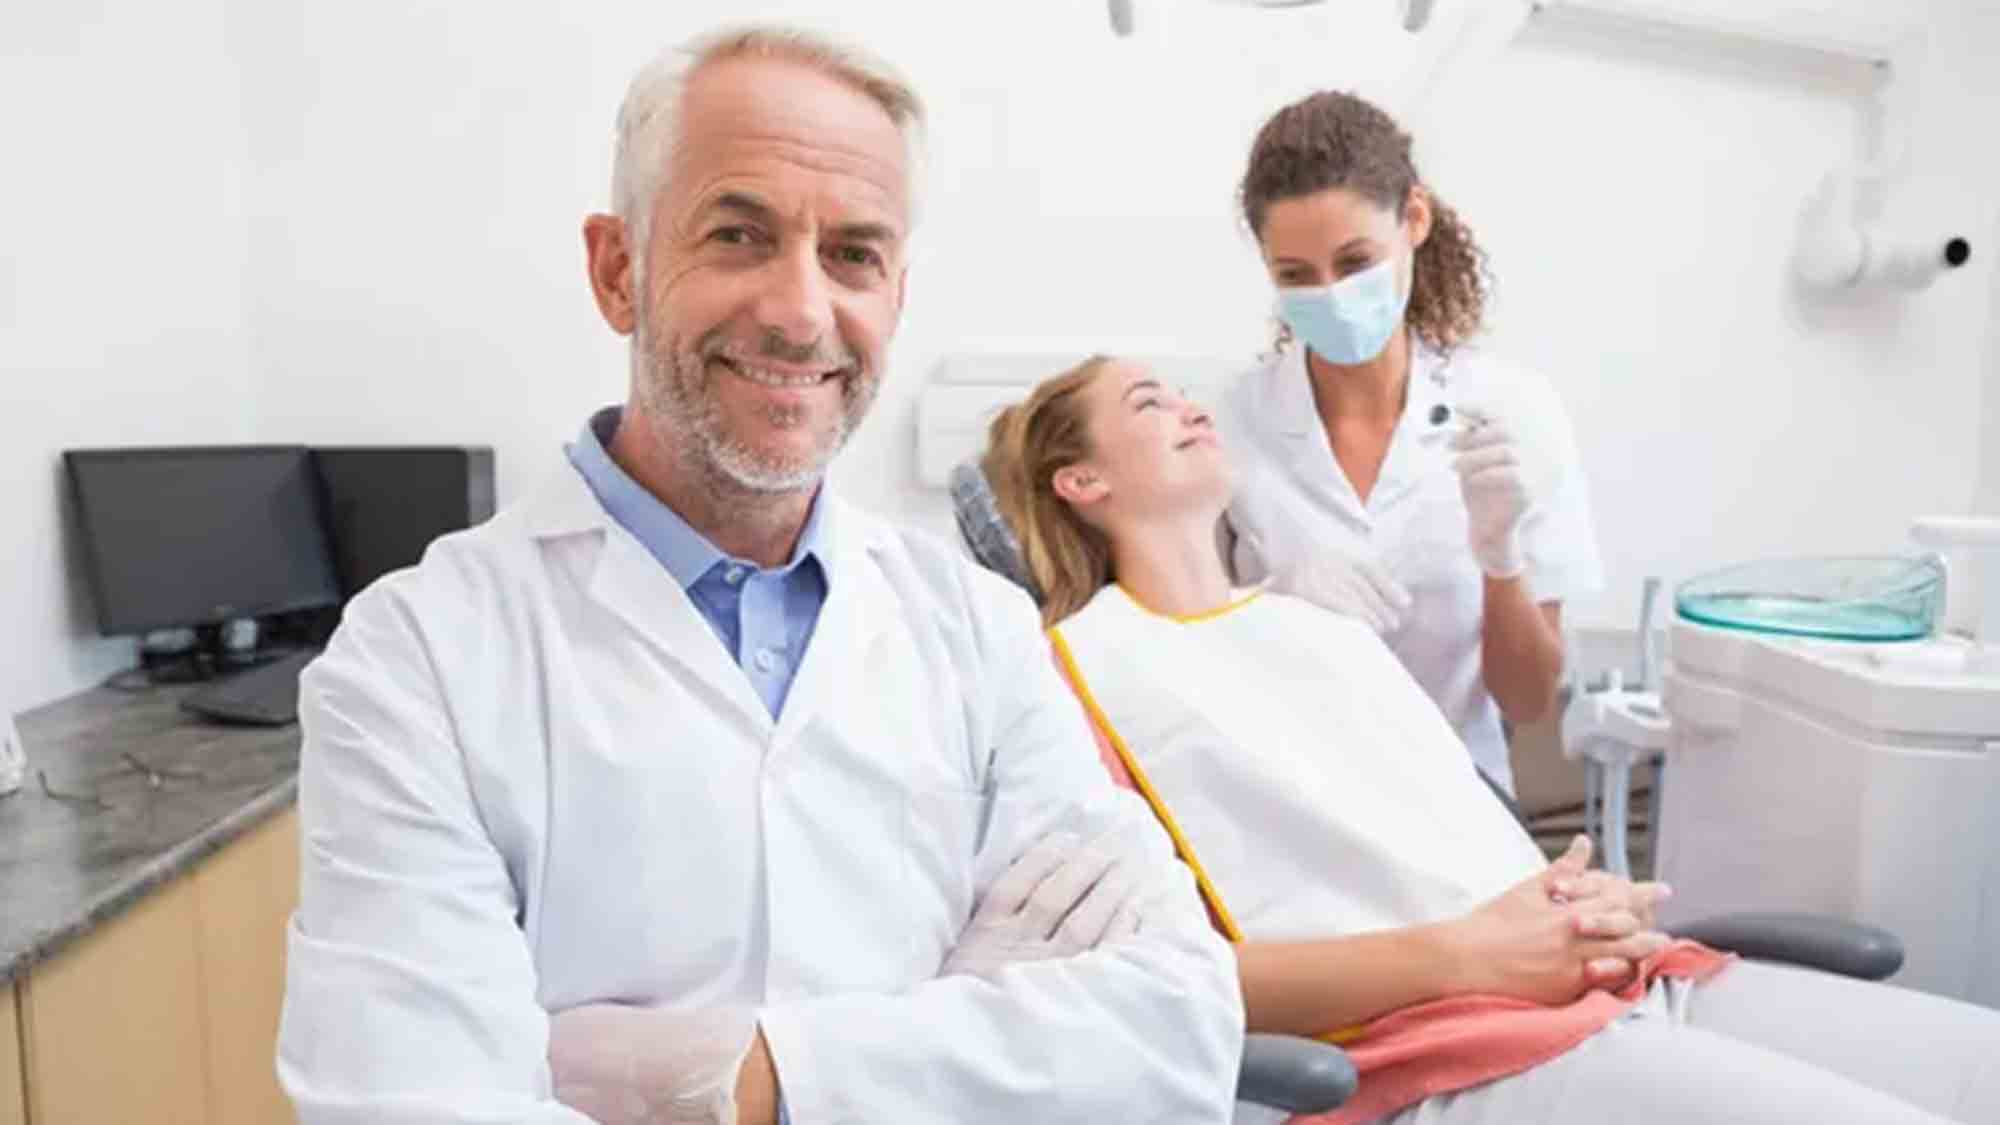 Bundeszahnärztekammer: Aktionskreis zum Tag der Zahngesundheit: Vulnerable Gruppen stärken, gesund beginnt im Mund – für alle!